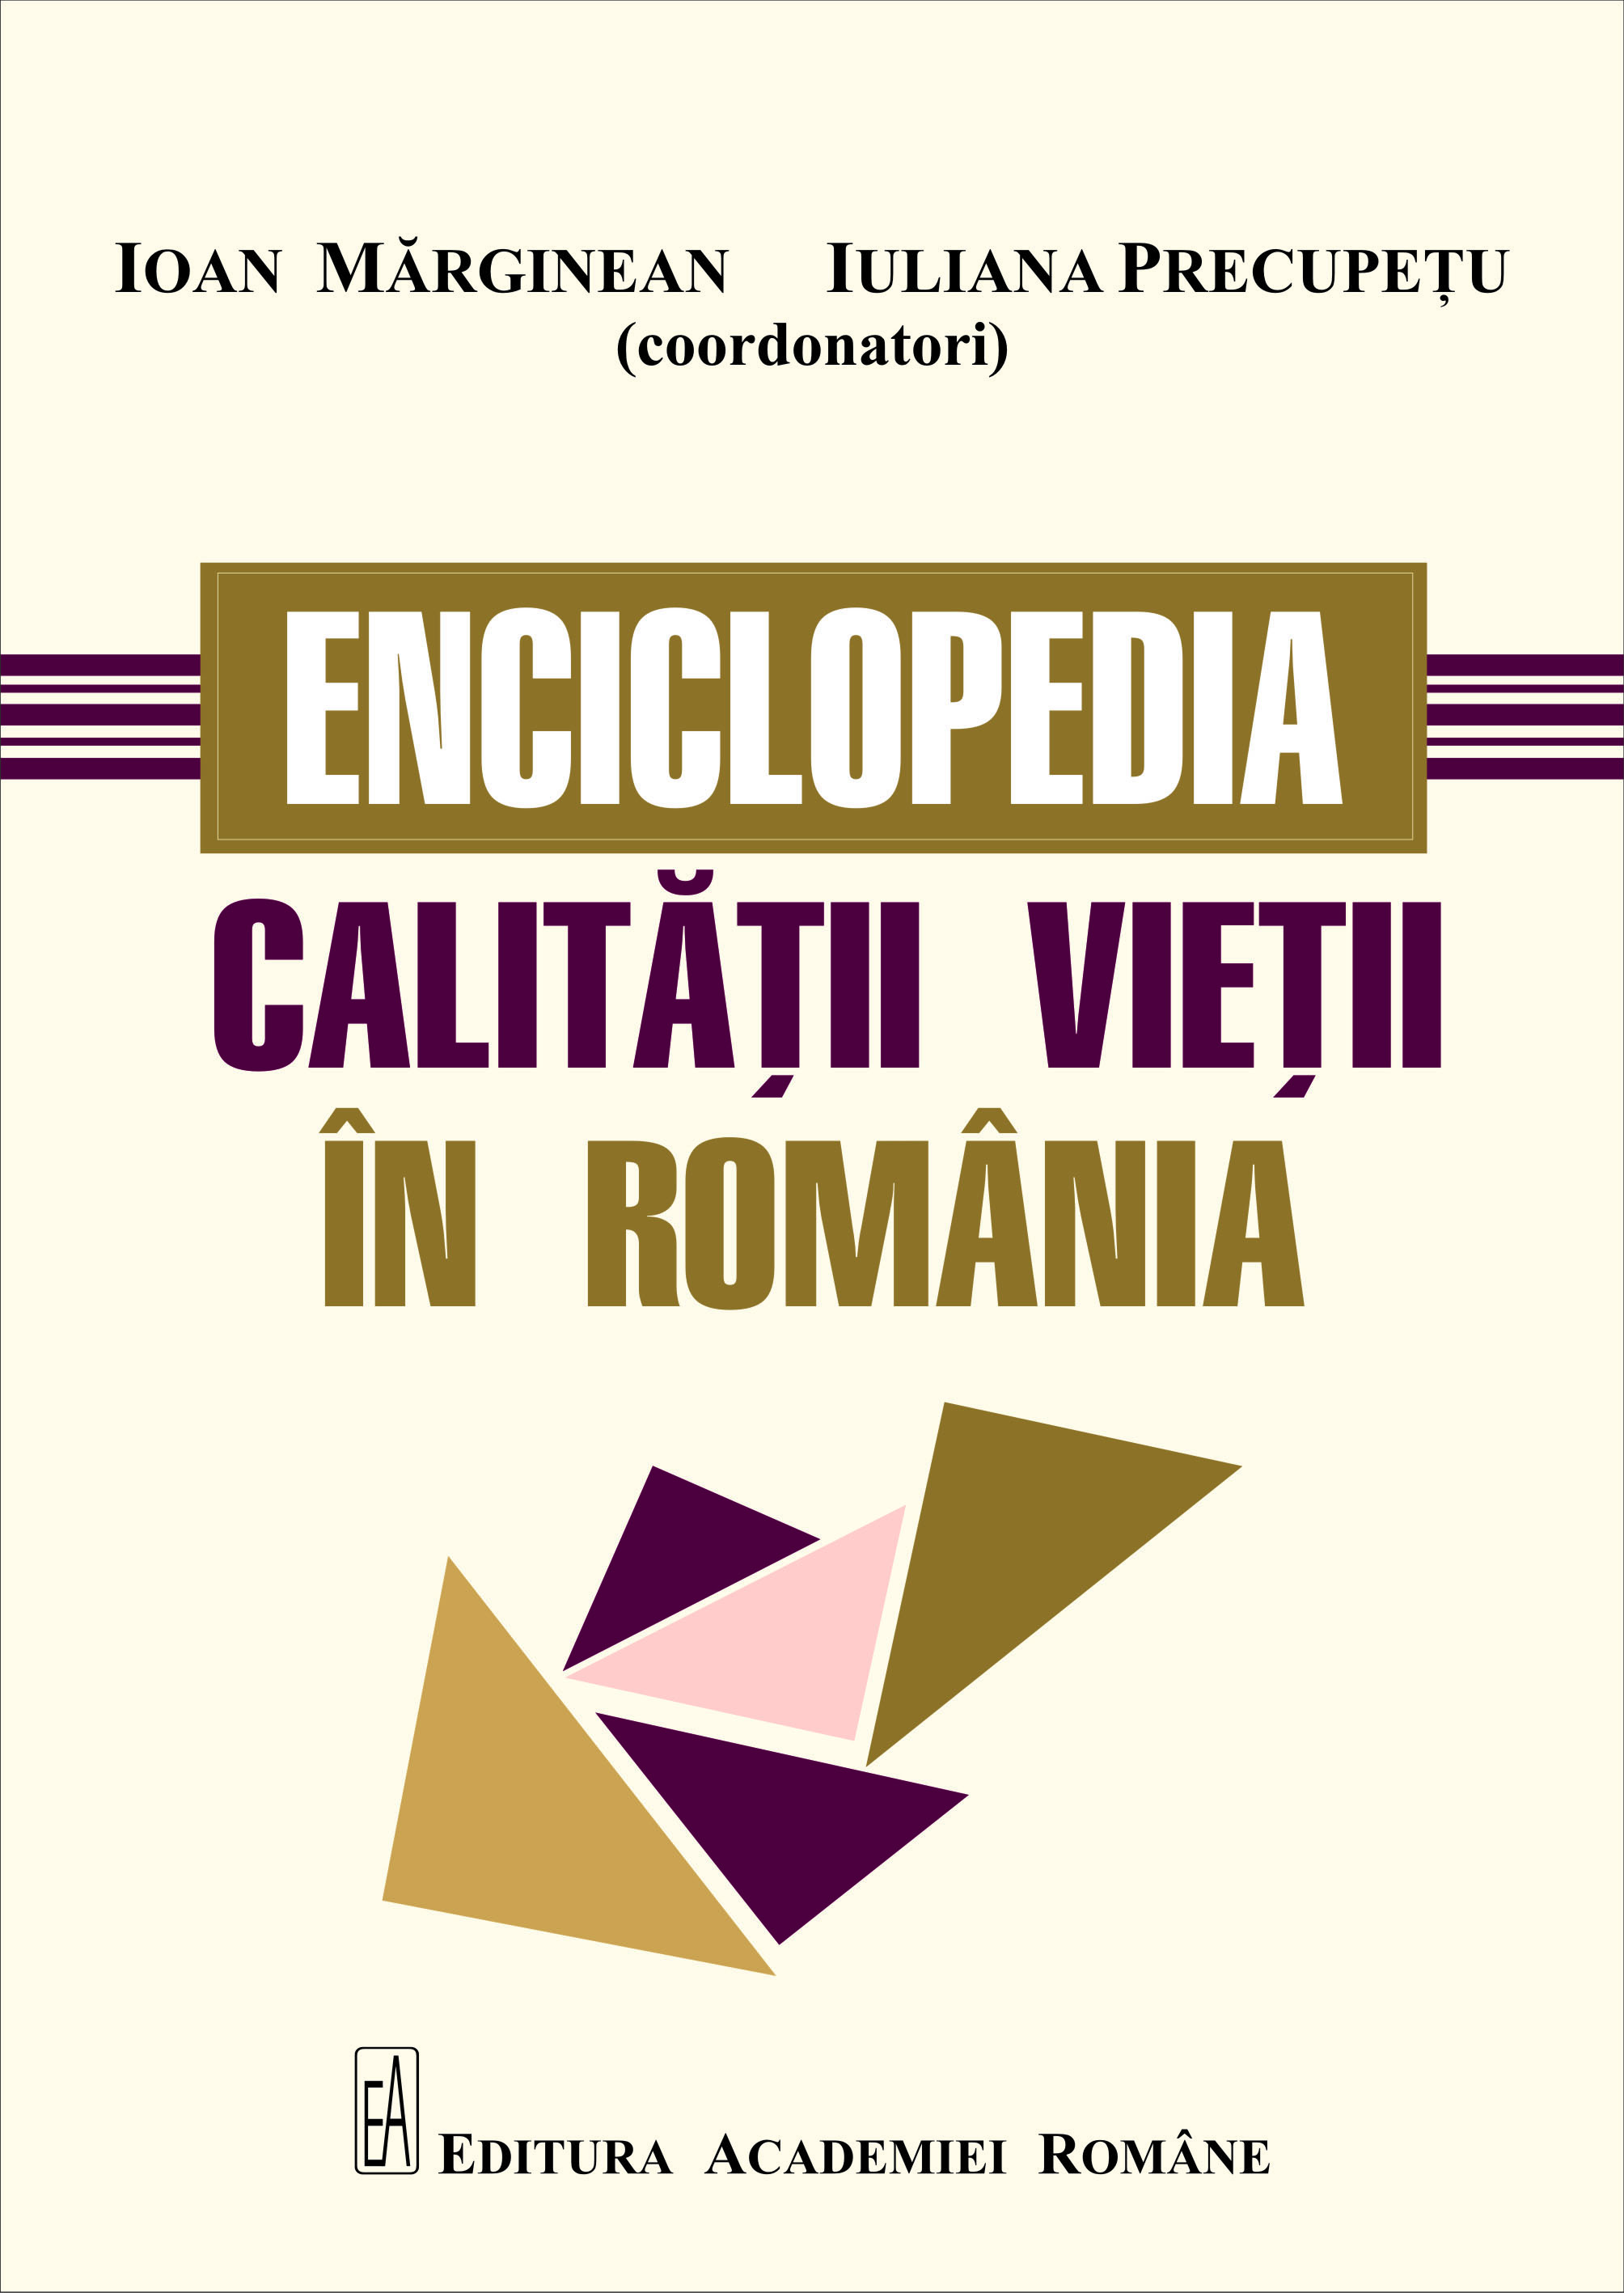 Apariție editorială: volumul Enciclopedia calității vieții în România